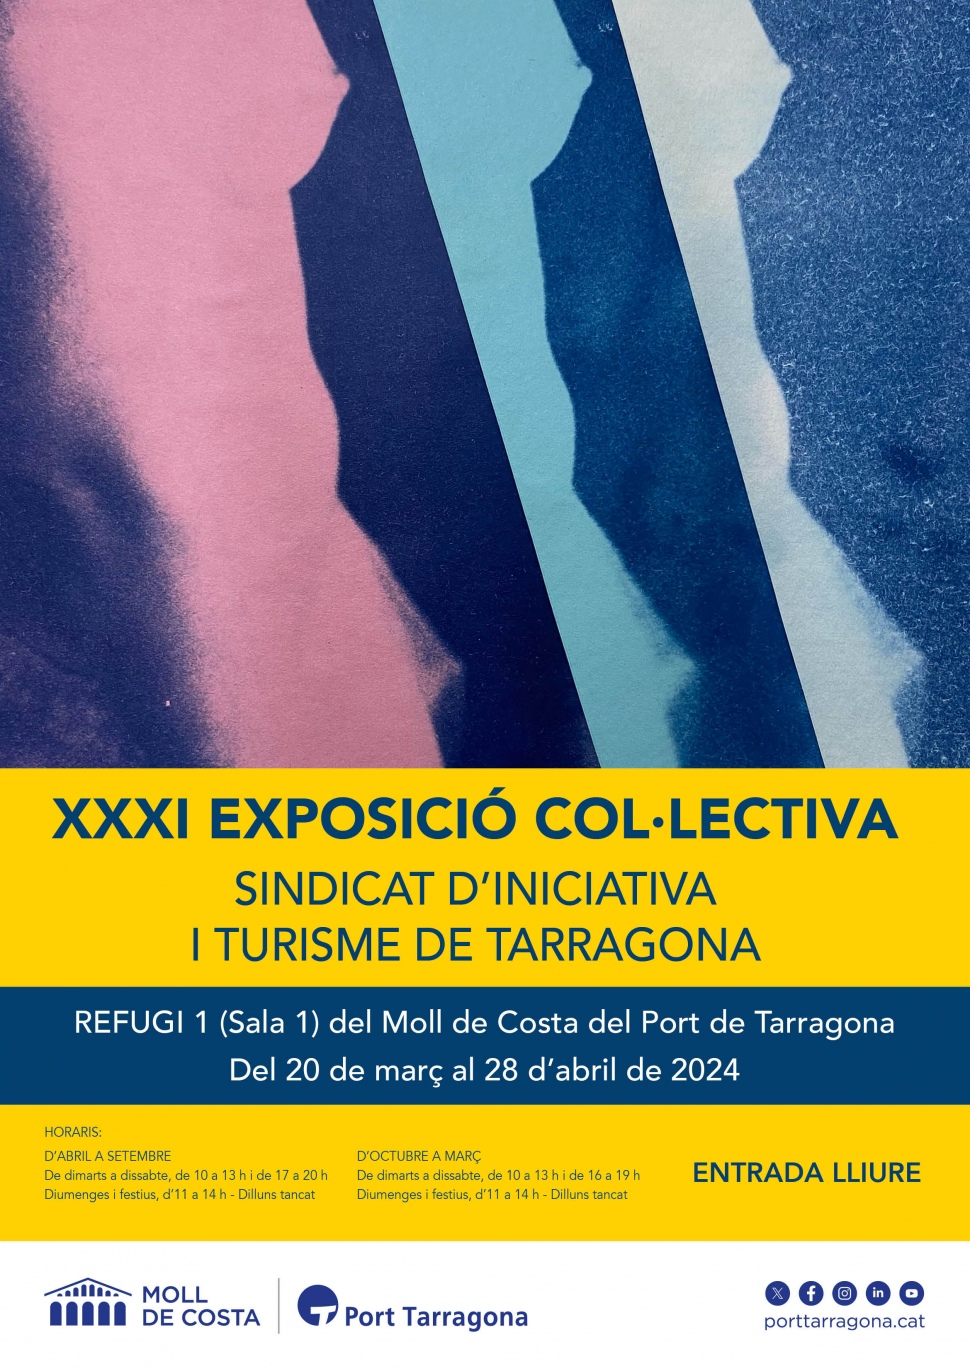 Propera inauguració al Refugi 1 del Port Tarragona de la XXXI Exposició Col·lectiva Sindicat d’Iniciativa i Turisme de Tarragona